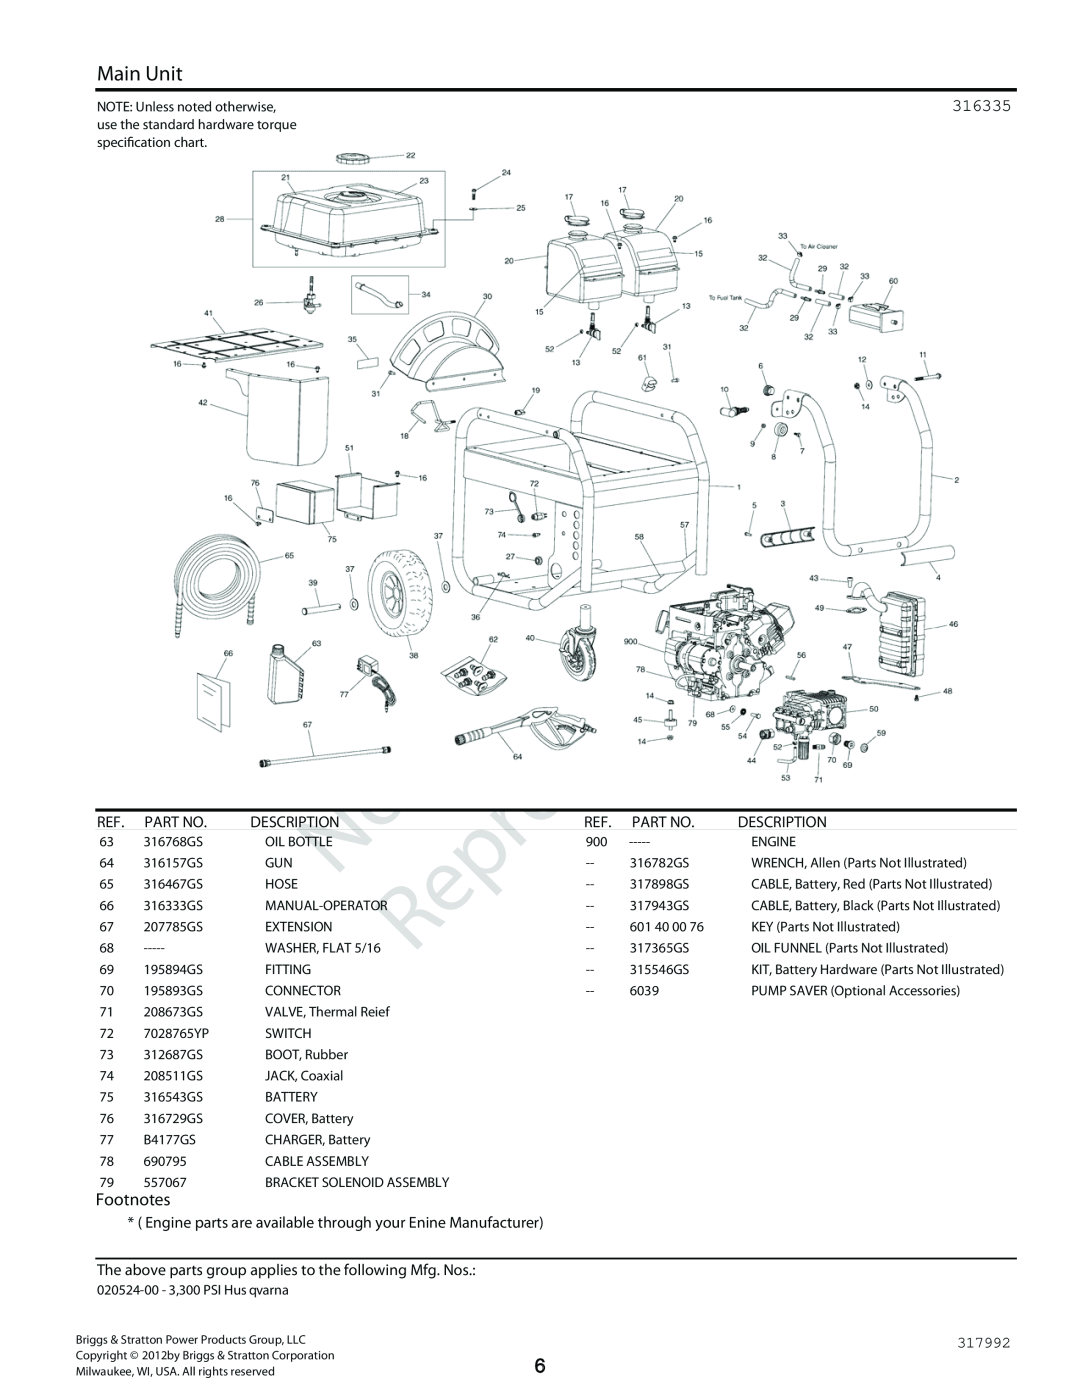 Husqvarna 020524-00 3, 300 PSI manual Reproduction, Main Unit, 316335, Footnotes, Description 